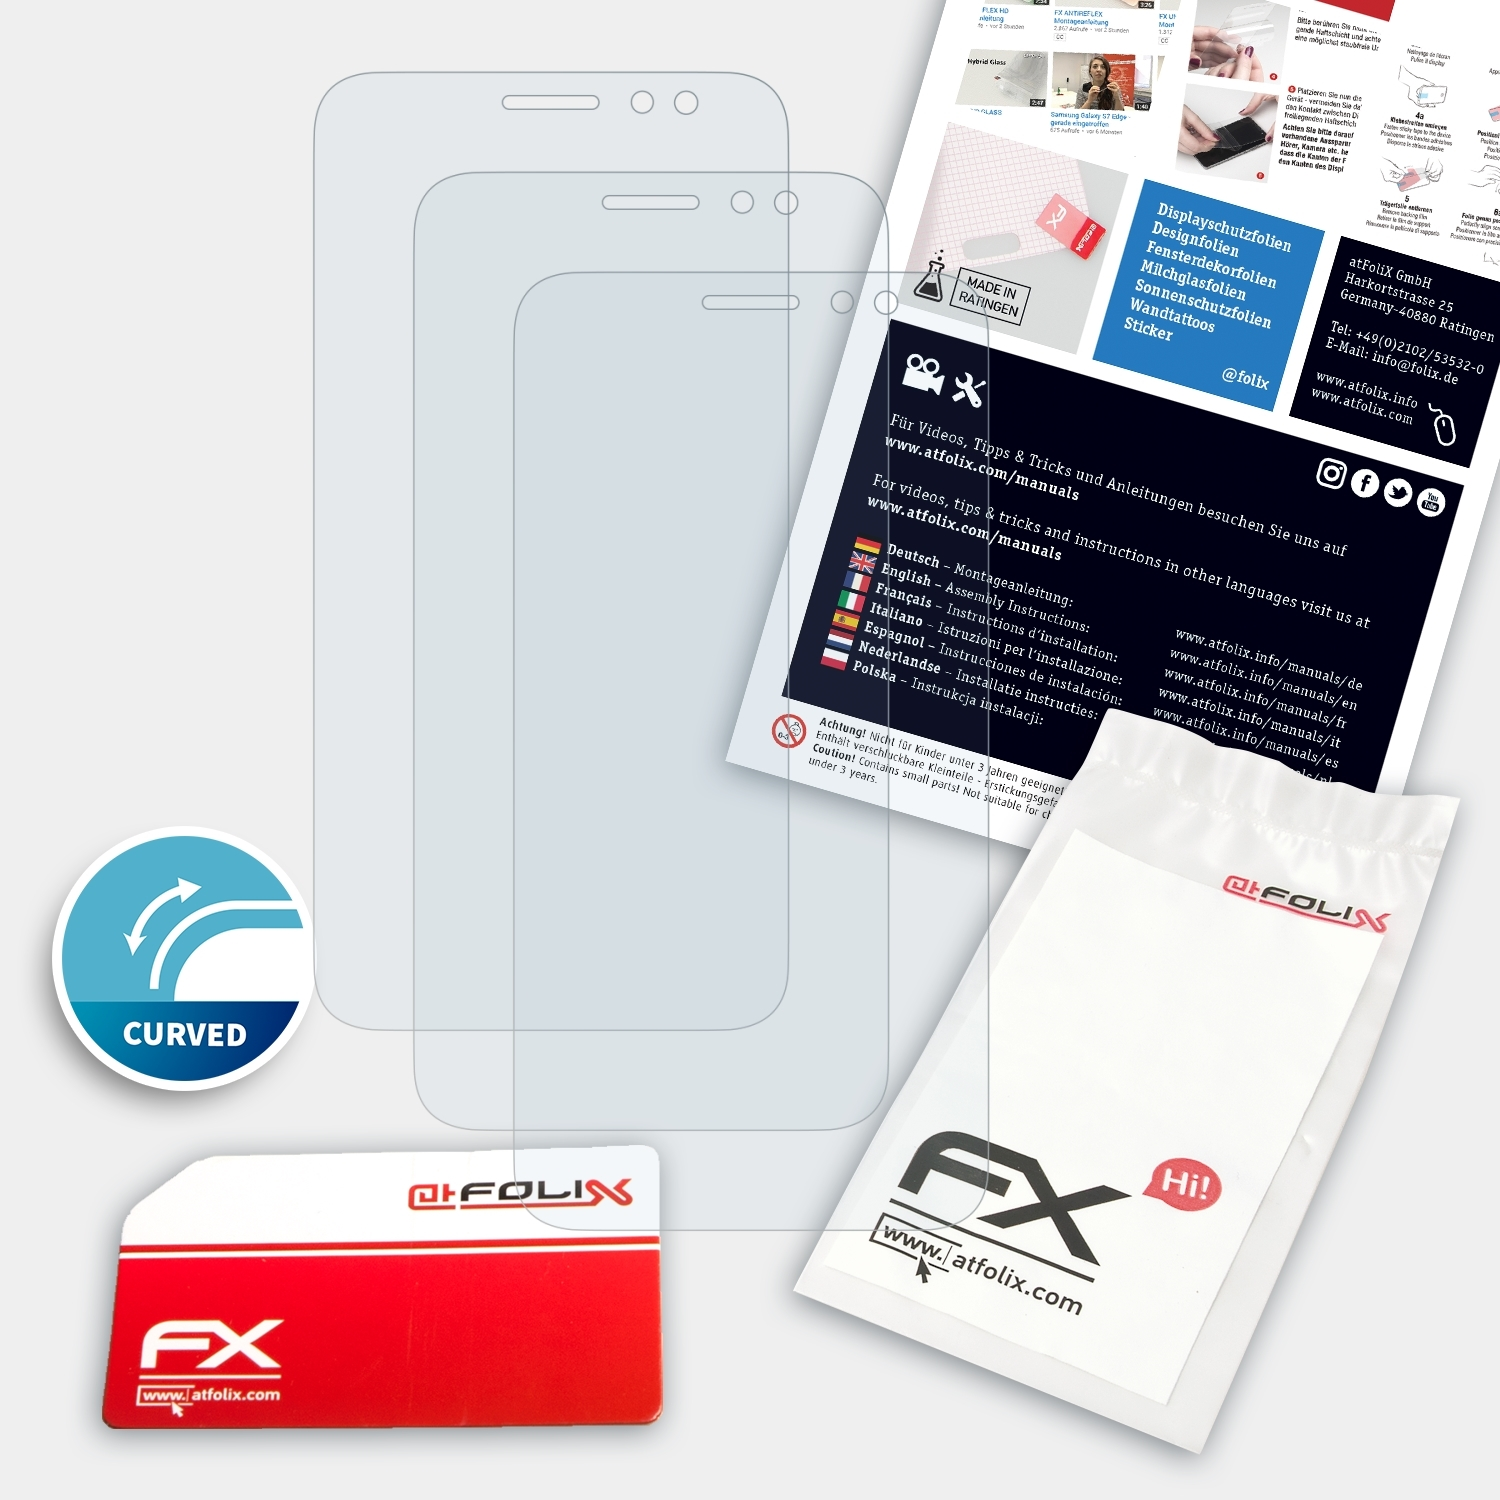 ATFOLIX 3x FX-ActiFleX Displayschutz(für Huawei Maimang 5)